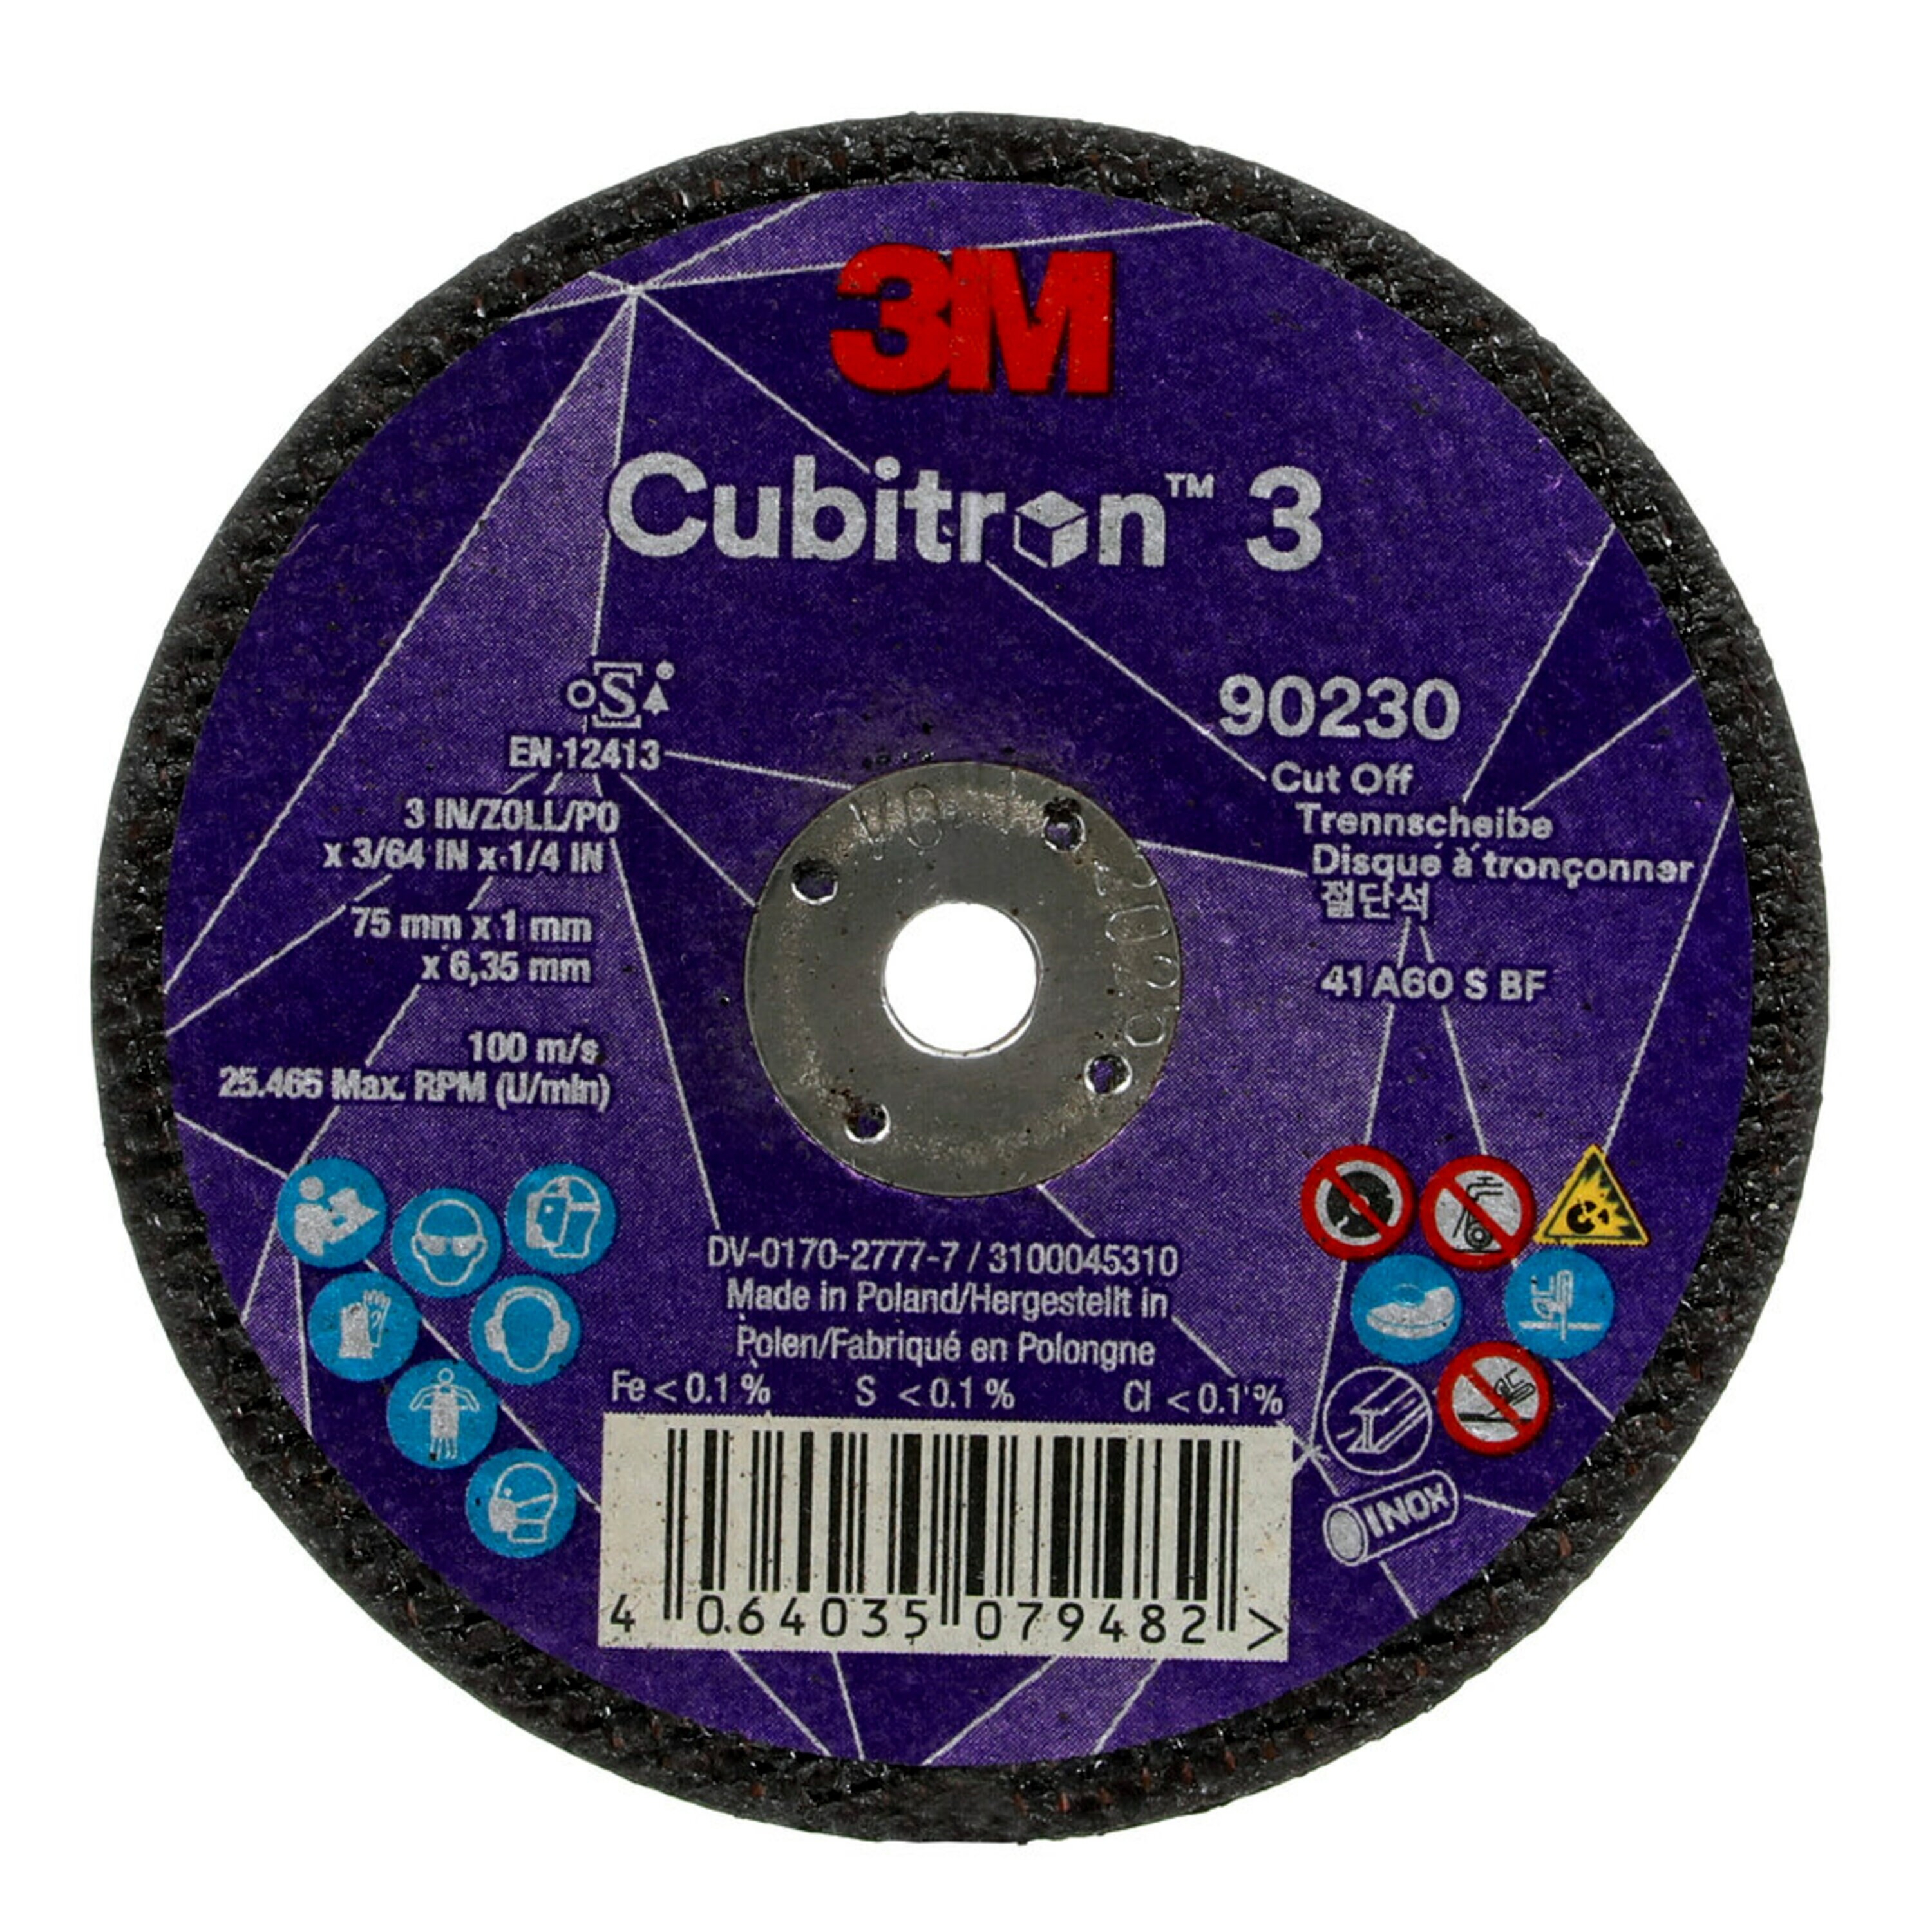 3M Cubitron 3 disco da taglio, 75 mm, 1 mm, 6,35 mm, 60+, tipo 41 #90230